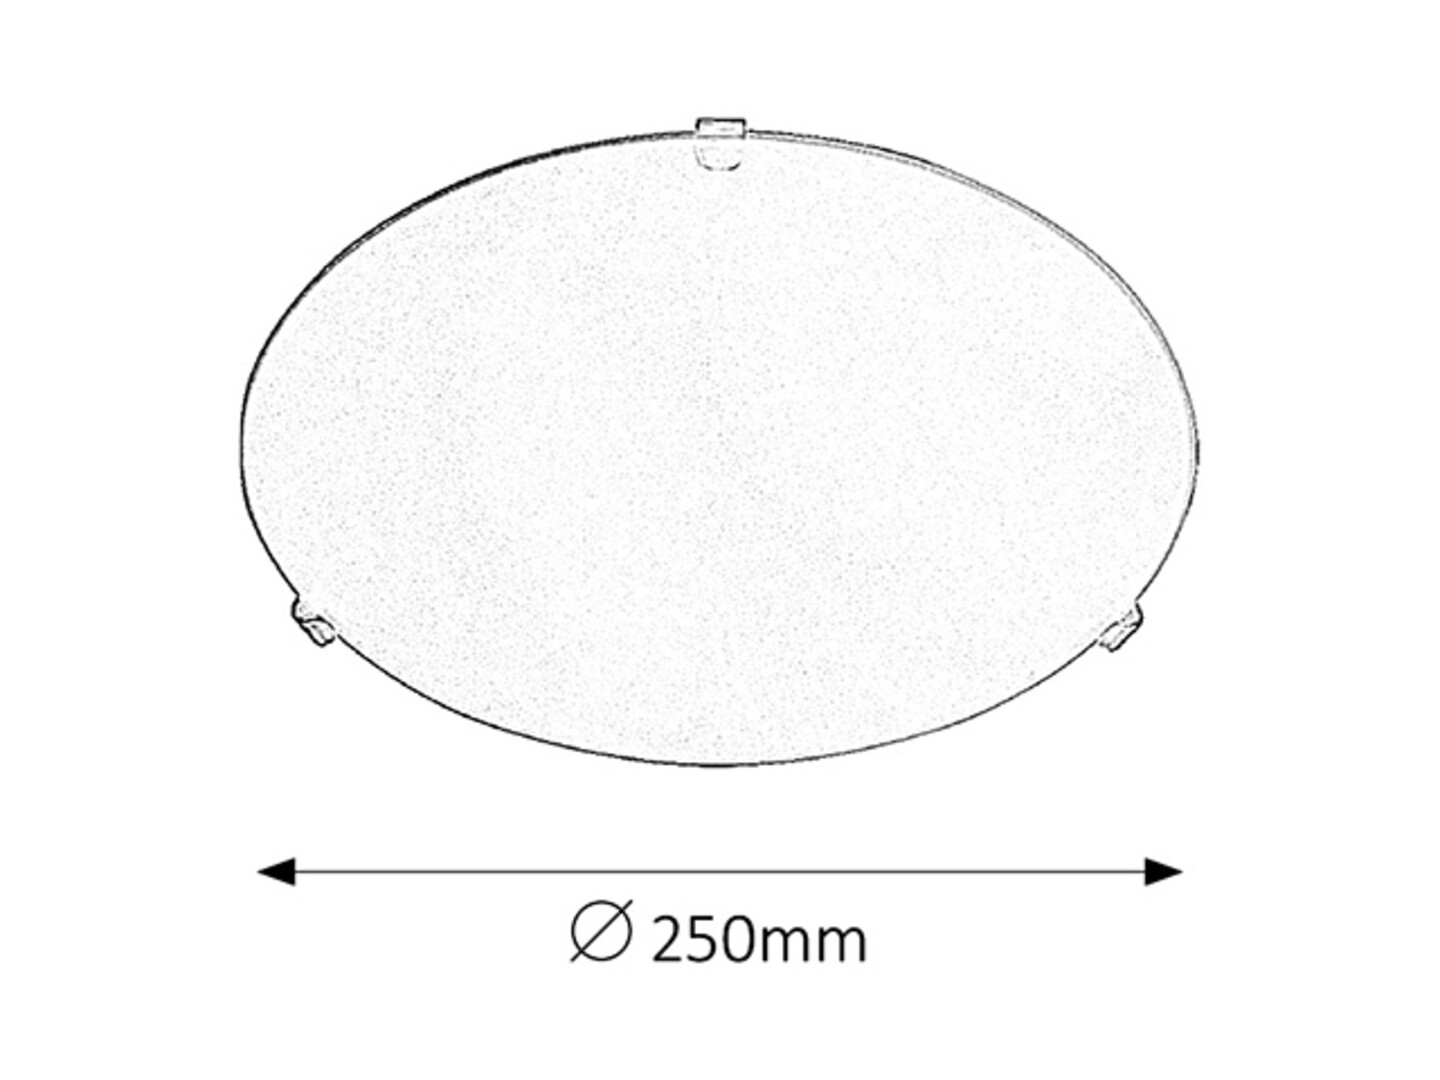 Deckenleuchte 1 Spot Simple 1803, E27, Metall-Kunststoff, weiß, rund, Standard, ø250mm